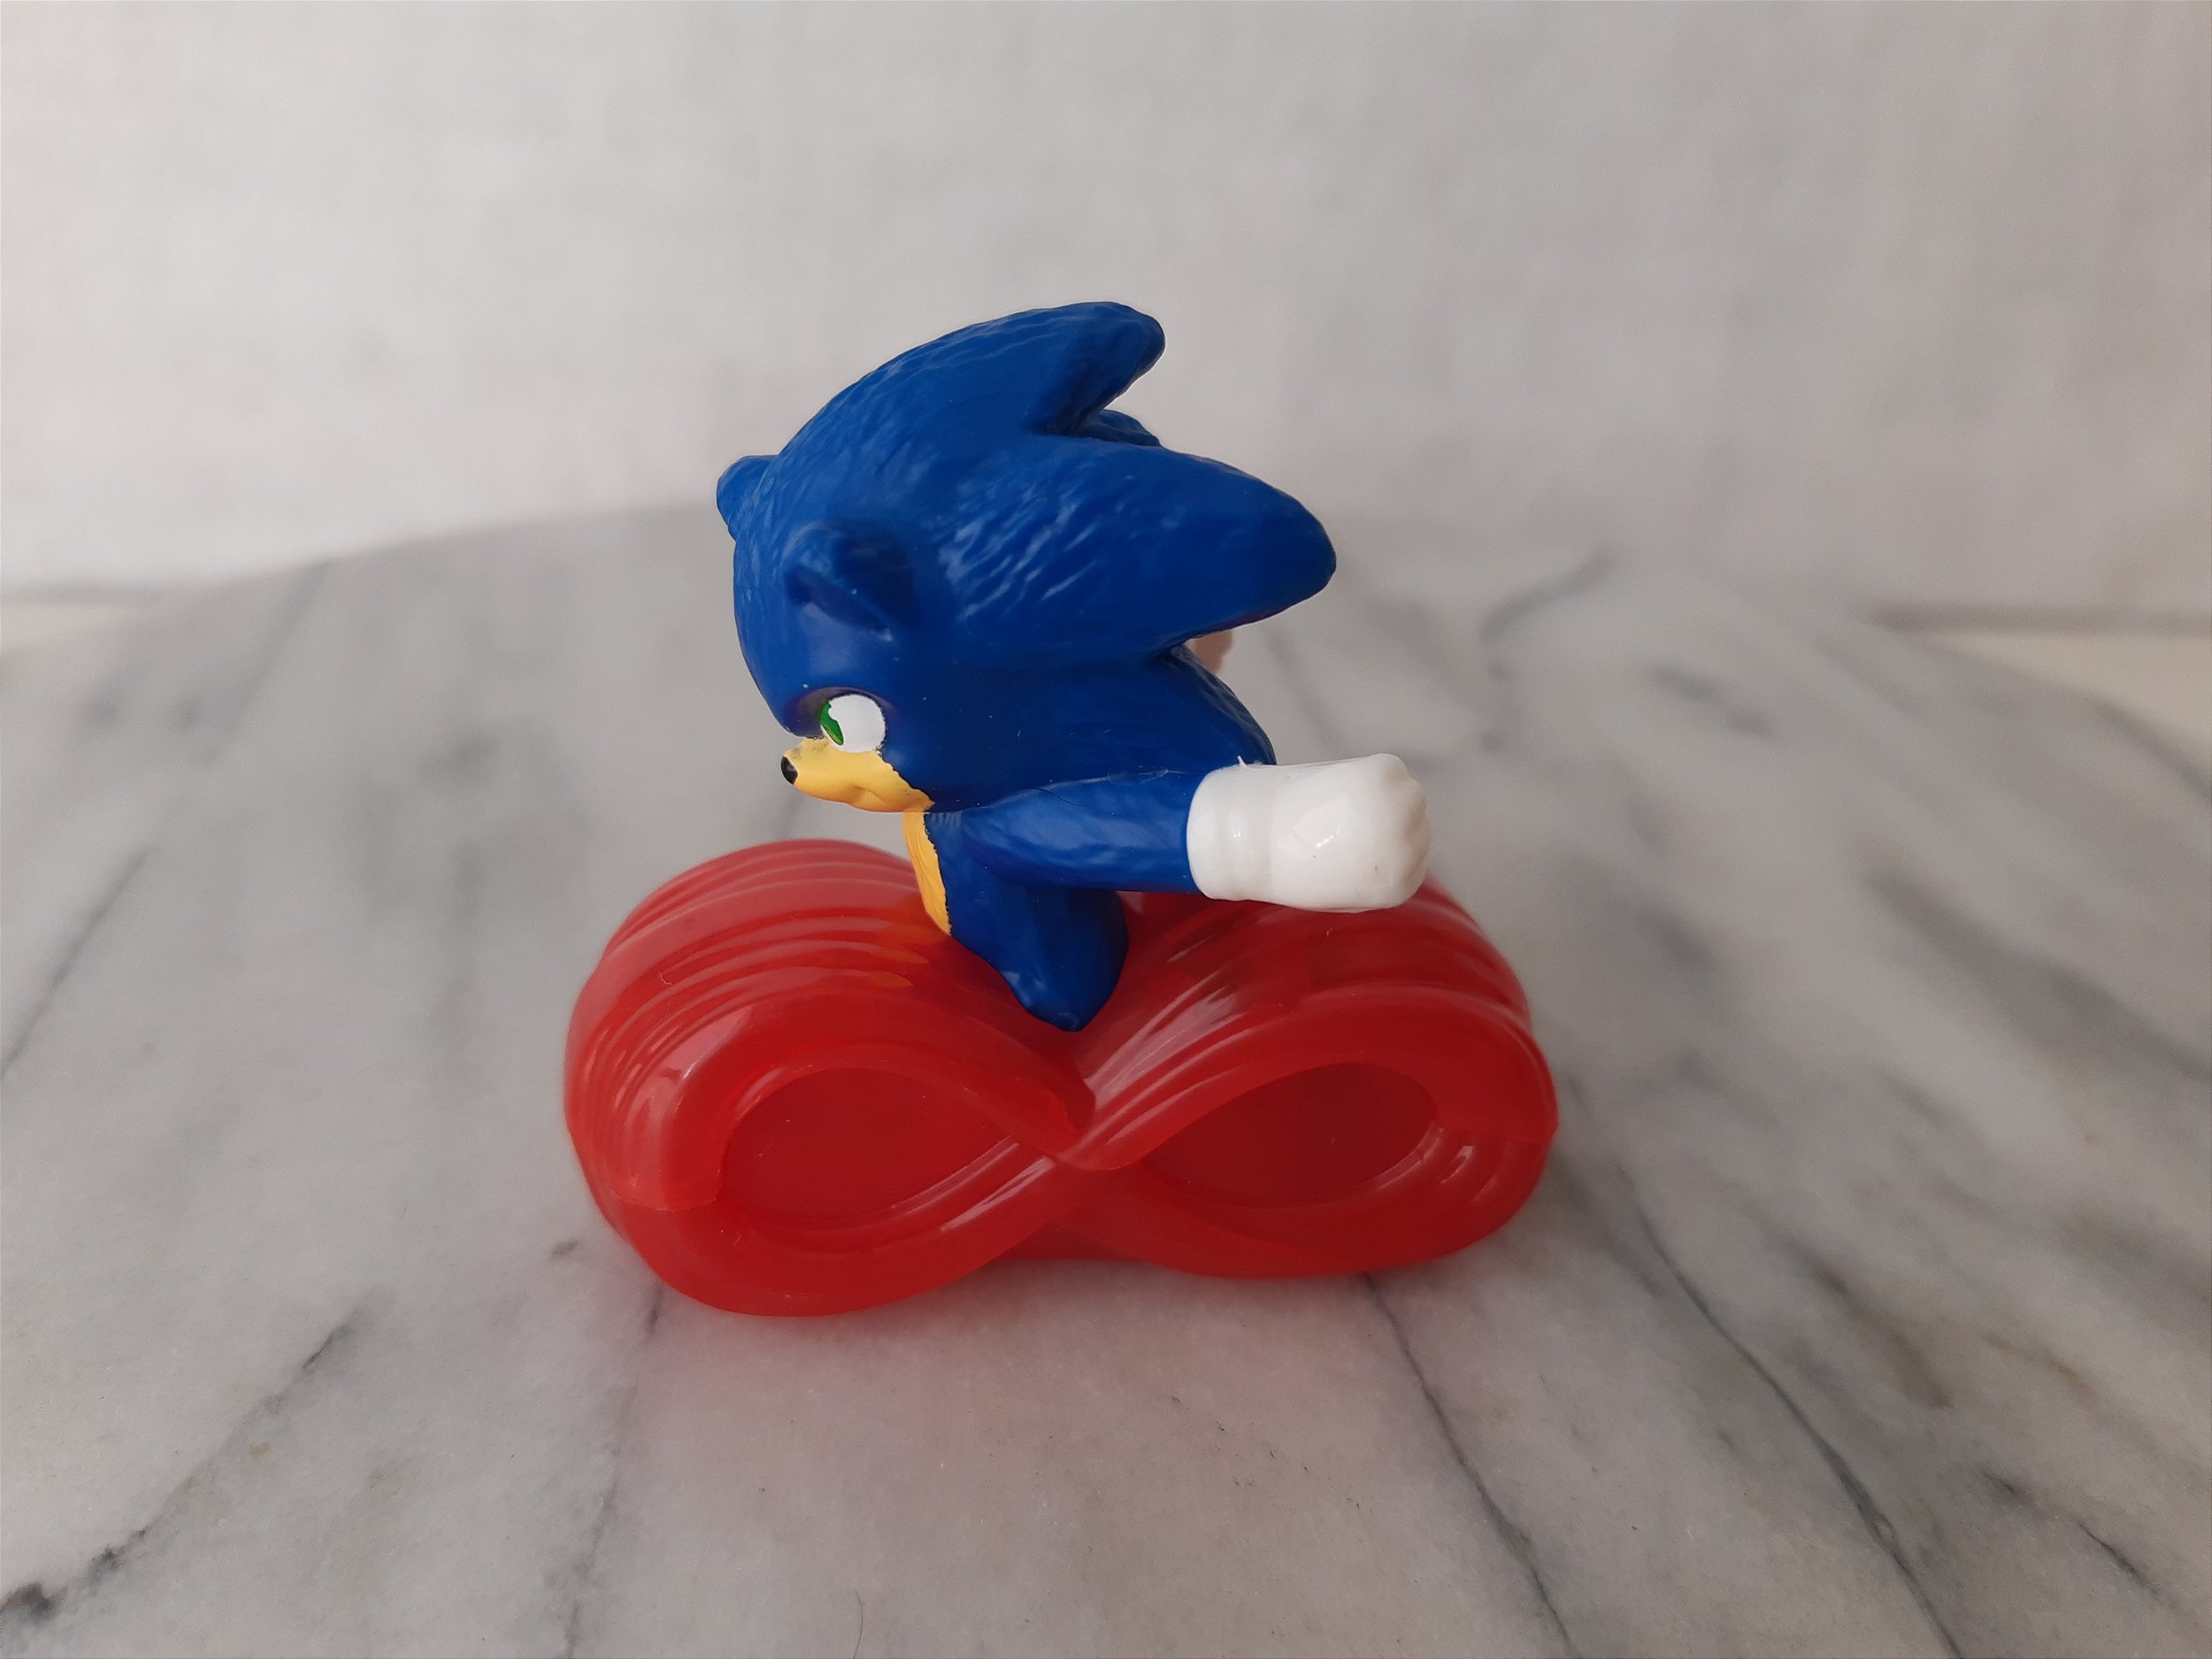 4 Bonecos do Sonic Generations - Coleção Sonic do Jogo - Sega - Toy  Brinquedos 